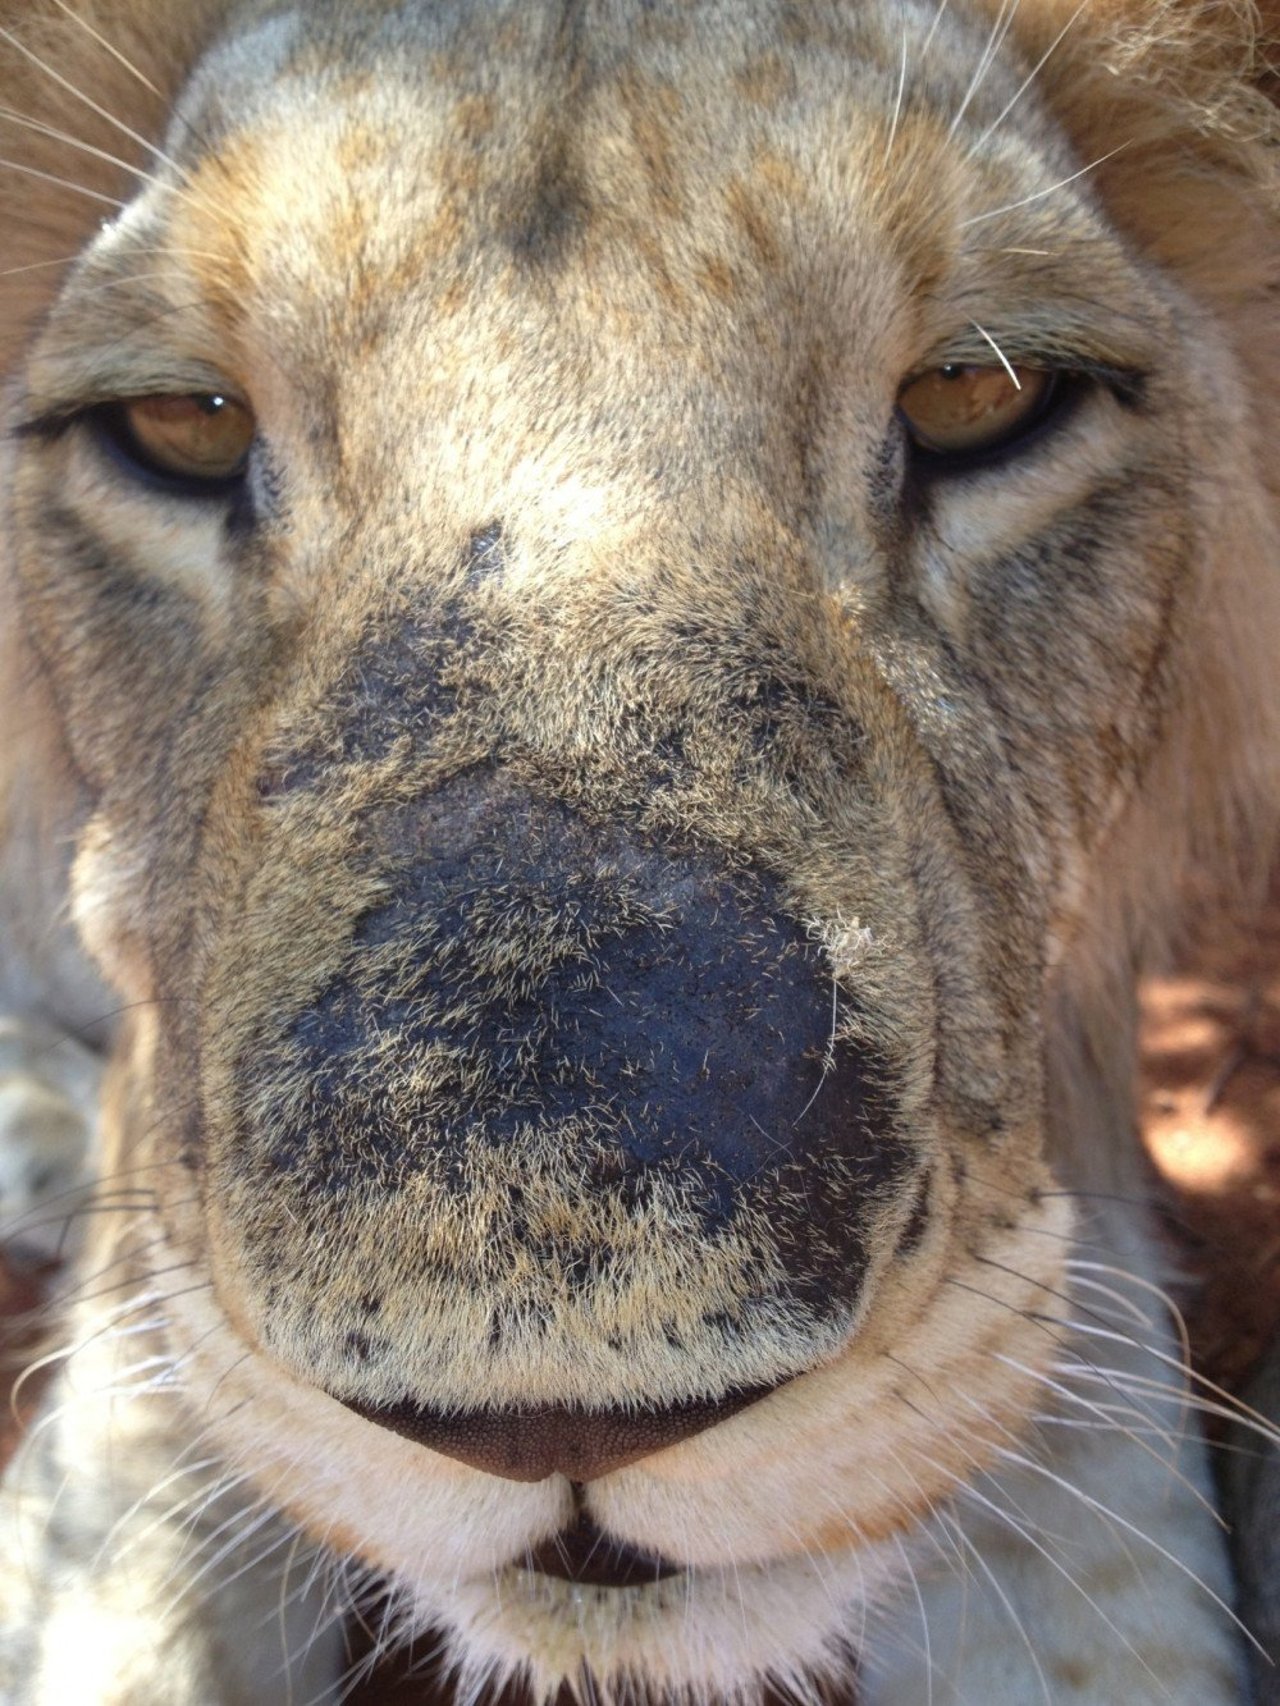 På sydafrikanske løvefarme lever løverne under elendige forhold. Foto: Blood Lions